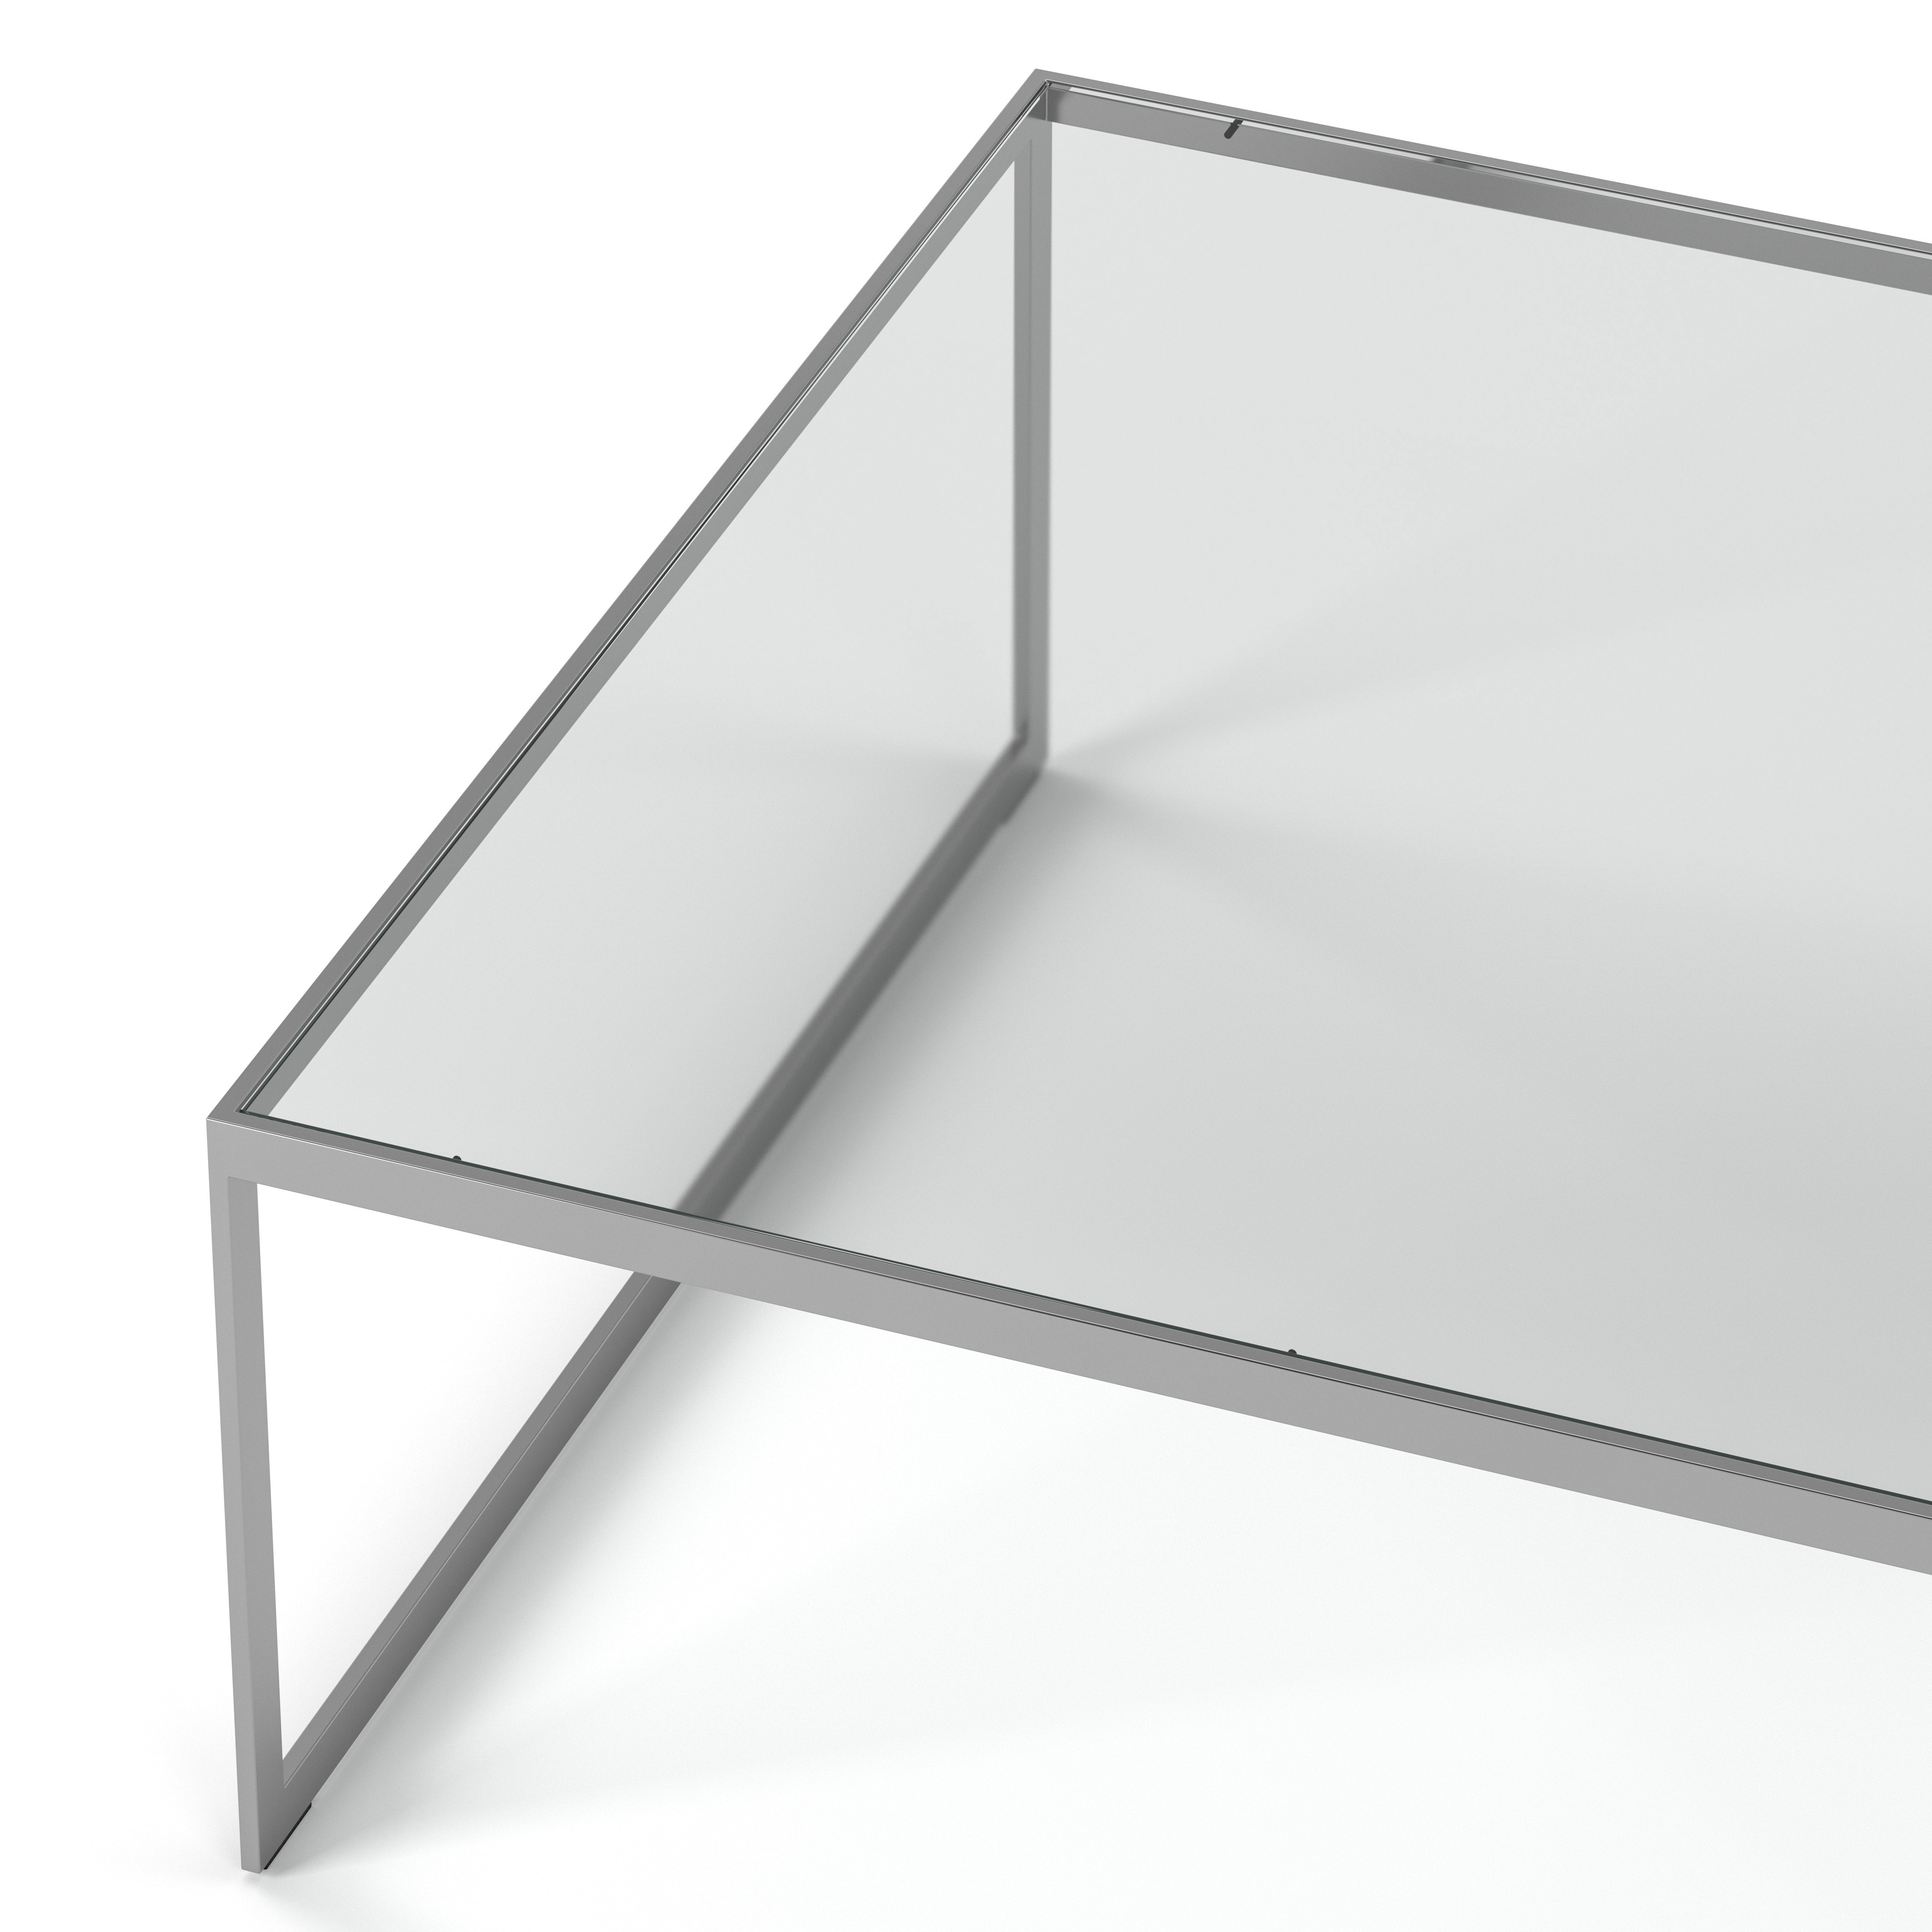 Englesson Bord Square Soffbord Kvadratiskt #Variant_Silvergrå Metall & Glas 